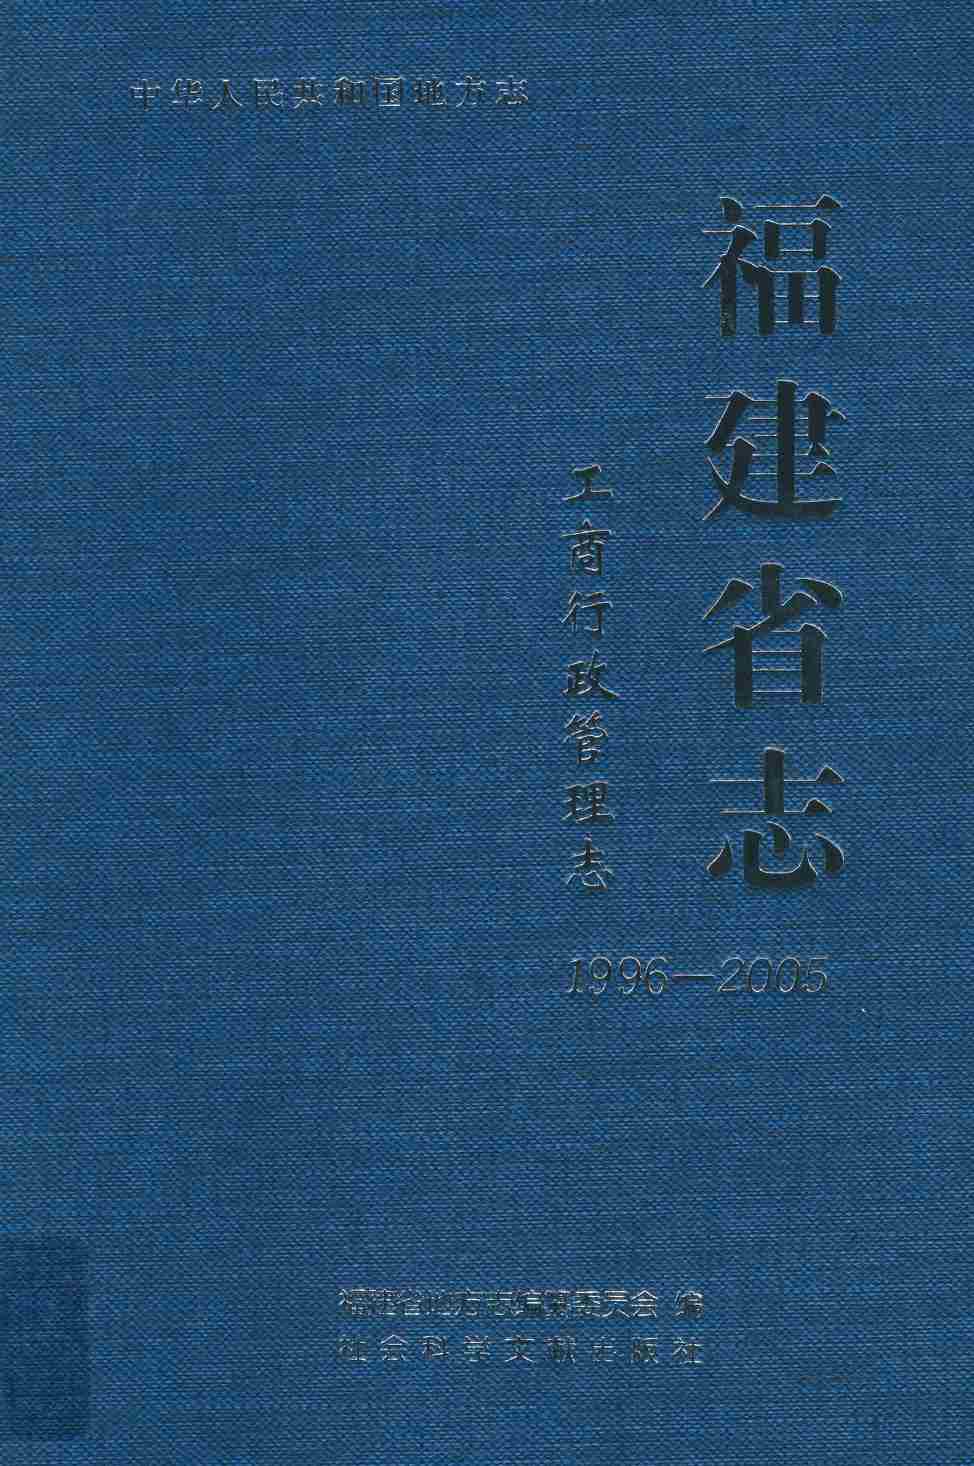 福建省志·工商行政管理志1996-2005